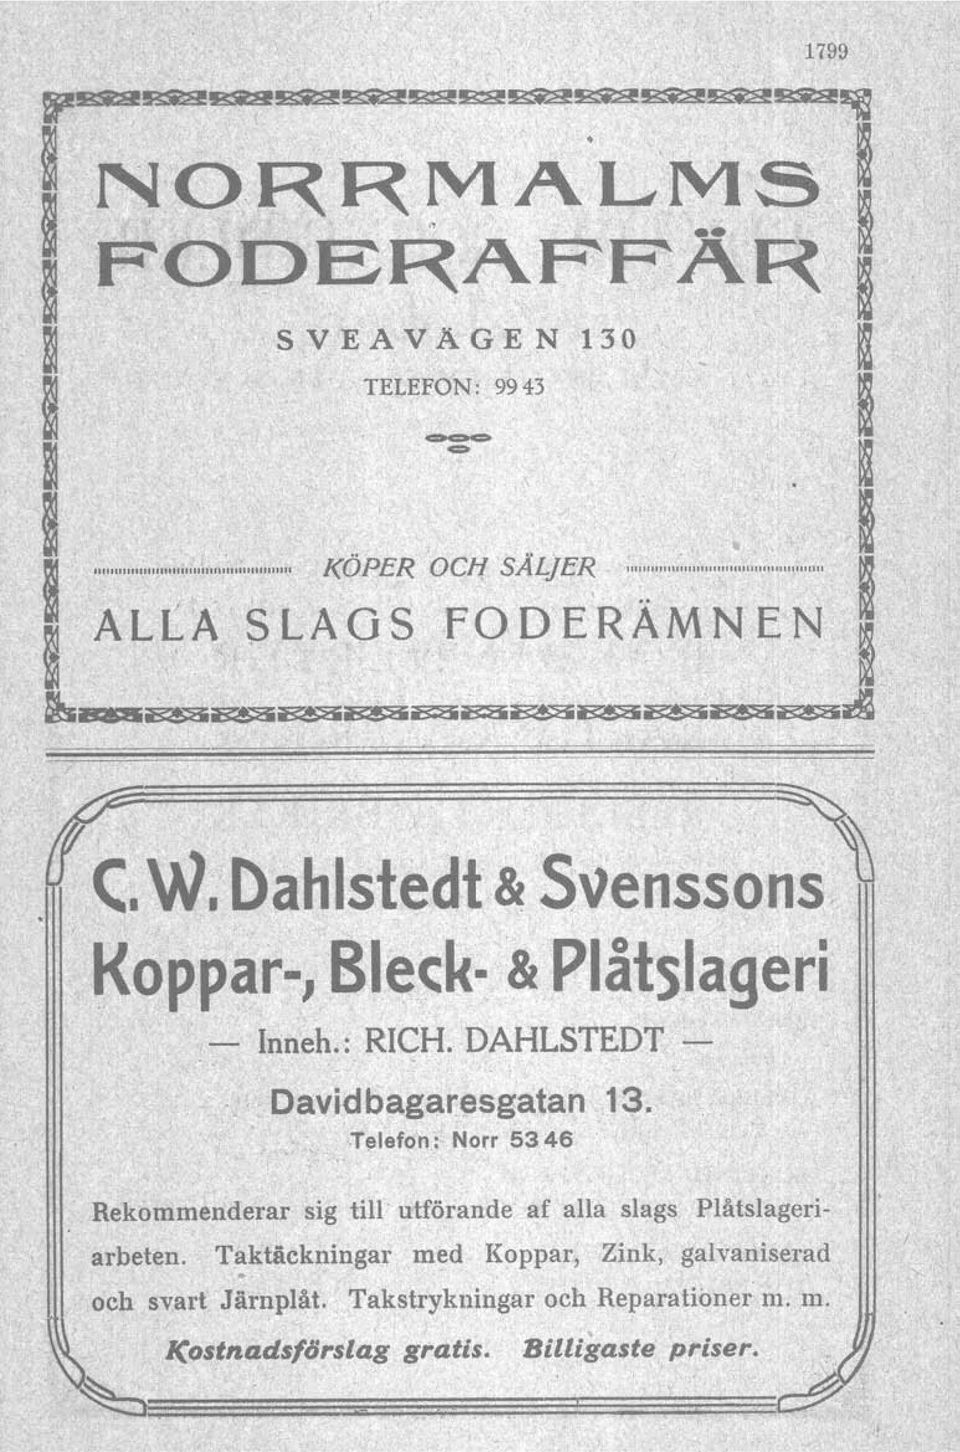 Dahlstedt & Svenssns Kppar, Bleck..& Plåtslageri" Inneh.: RICH. DAHLSTEDT "'v'; Davidbagar:esgatan 13.,,. ~,~..,. ',T~lef9 n: Nfr 5346 Rekmmenderar sig till utförande af alla slags Plåtslageriarbeten.